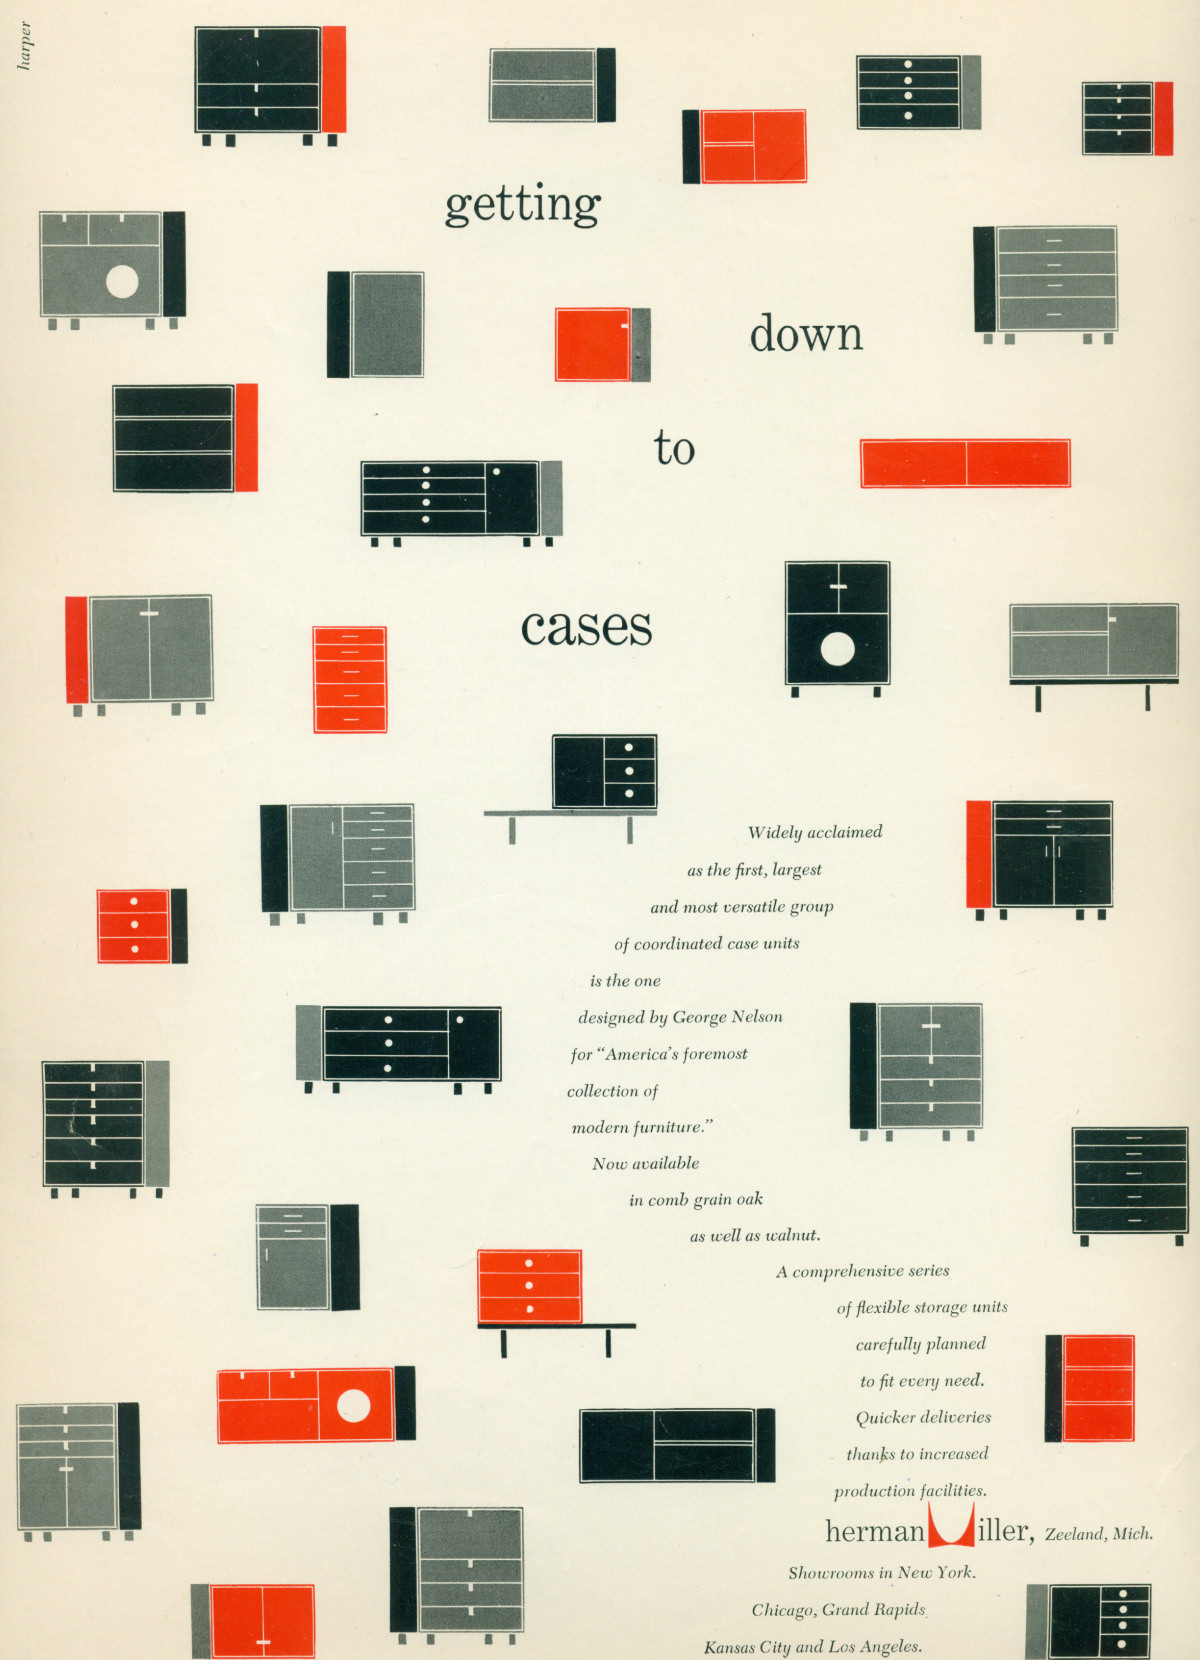 Representaciones gráficas en rojo, negro y gris de distintas combinaciones de la serie de gabinetes básicos Nelson alrededor del texto promocional del anuncio escrito en forma curva.